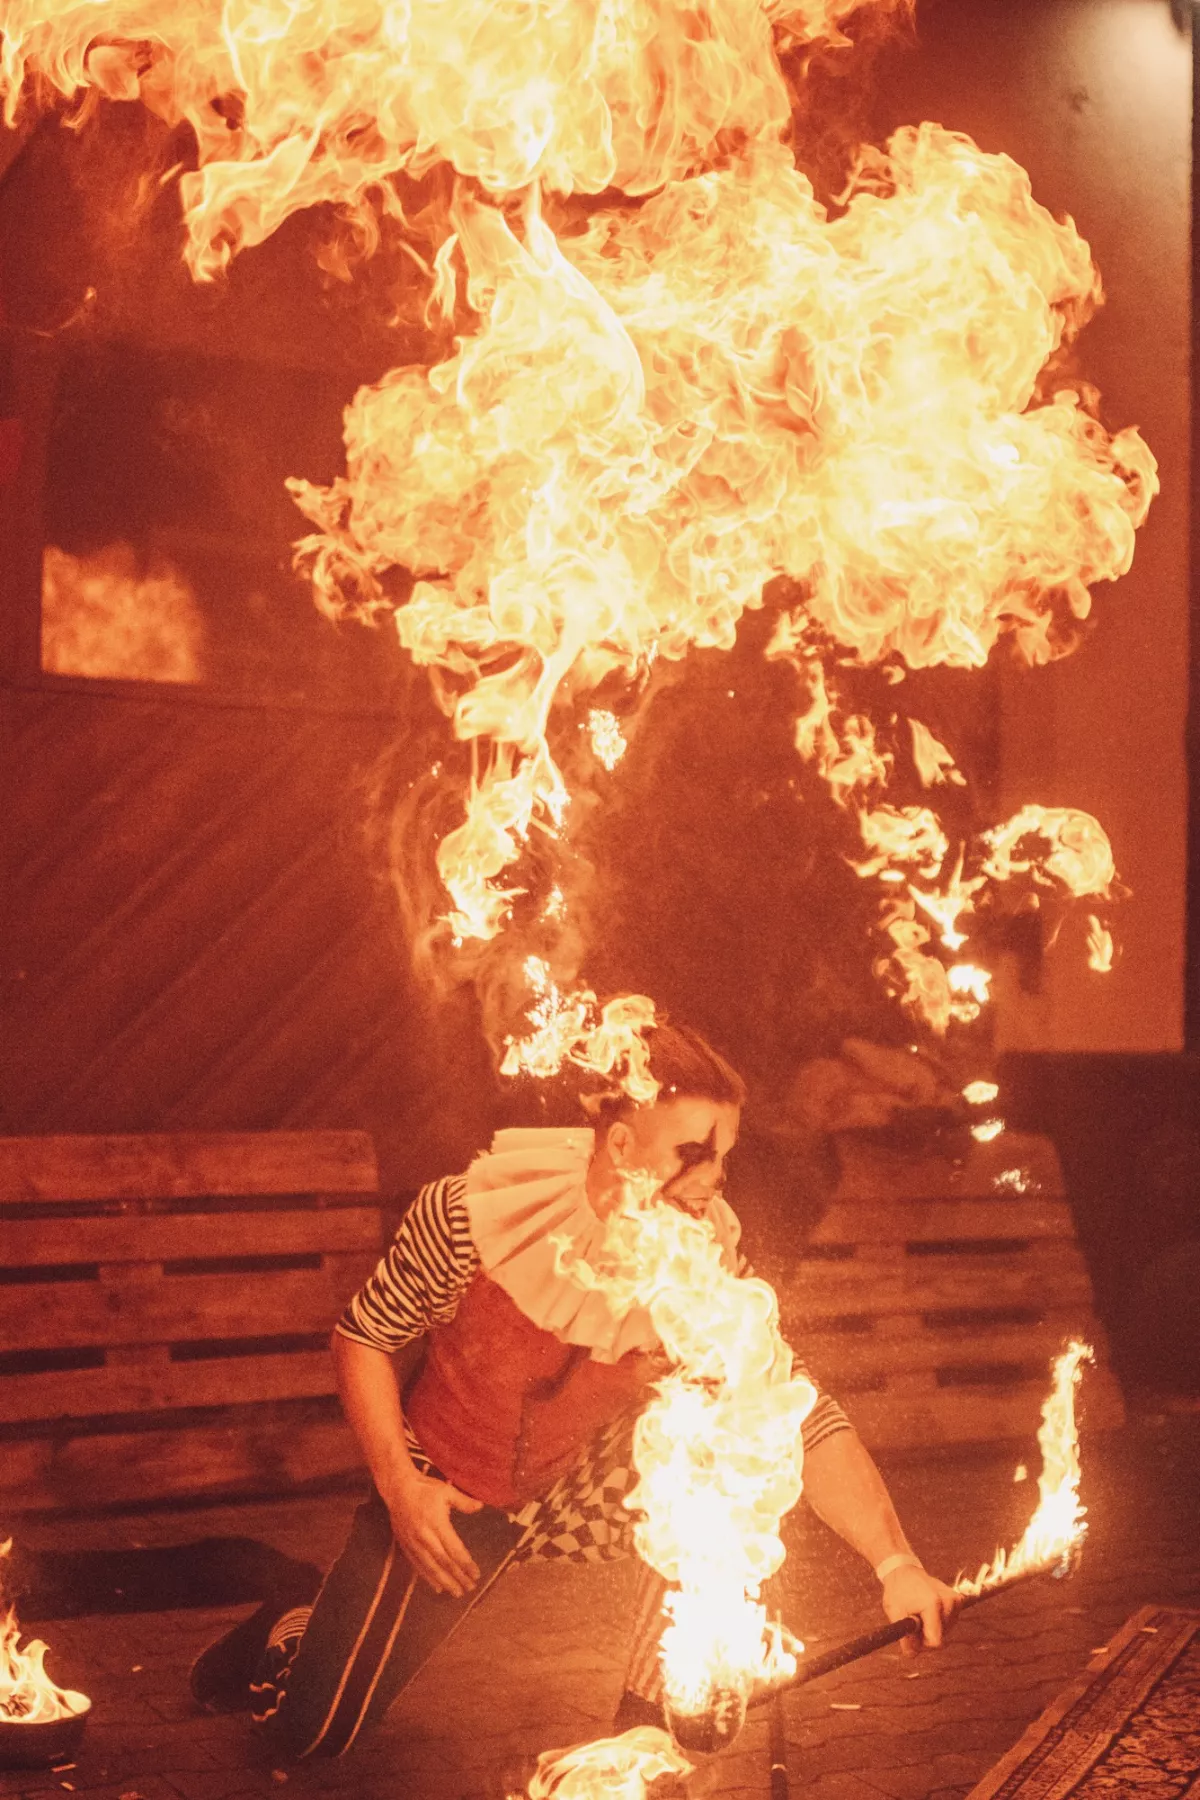 In der Show gibt es auch groe Flammen (/images/bilder/thumbs/719_4_bild_JSK_7982.jpeg)